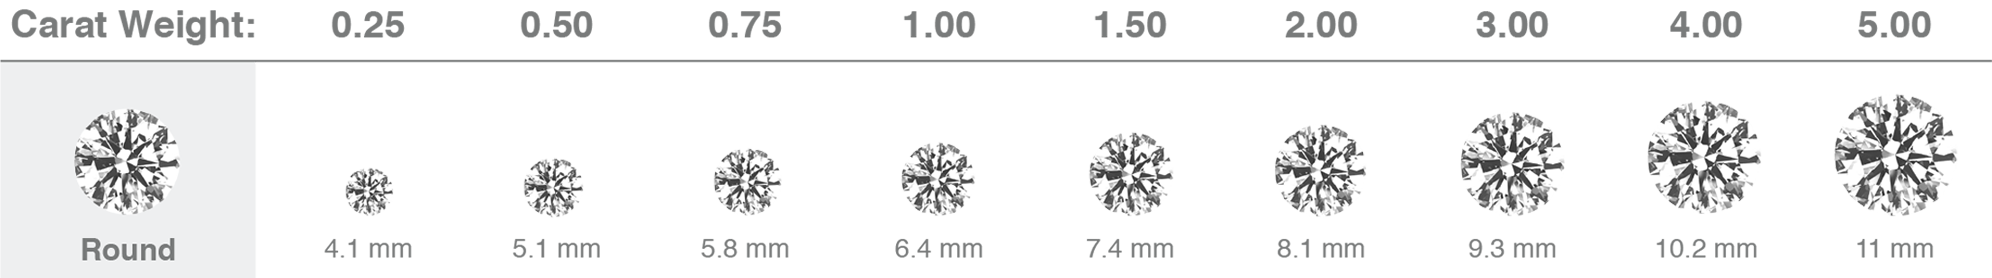 Printable Diamond Size Chart